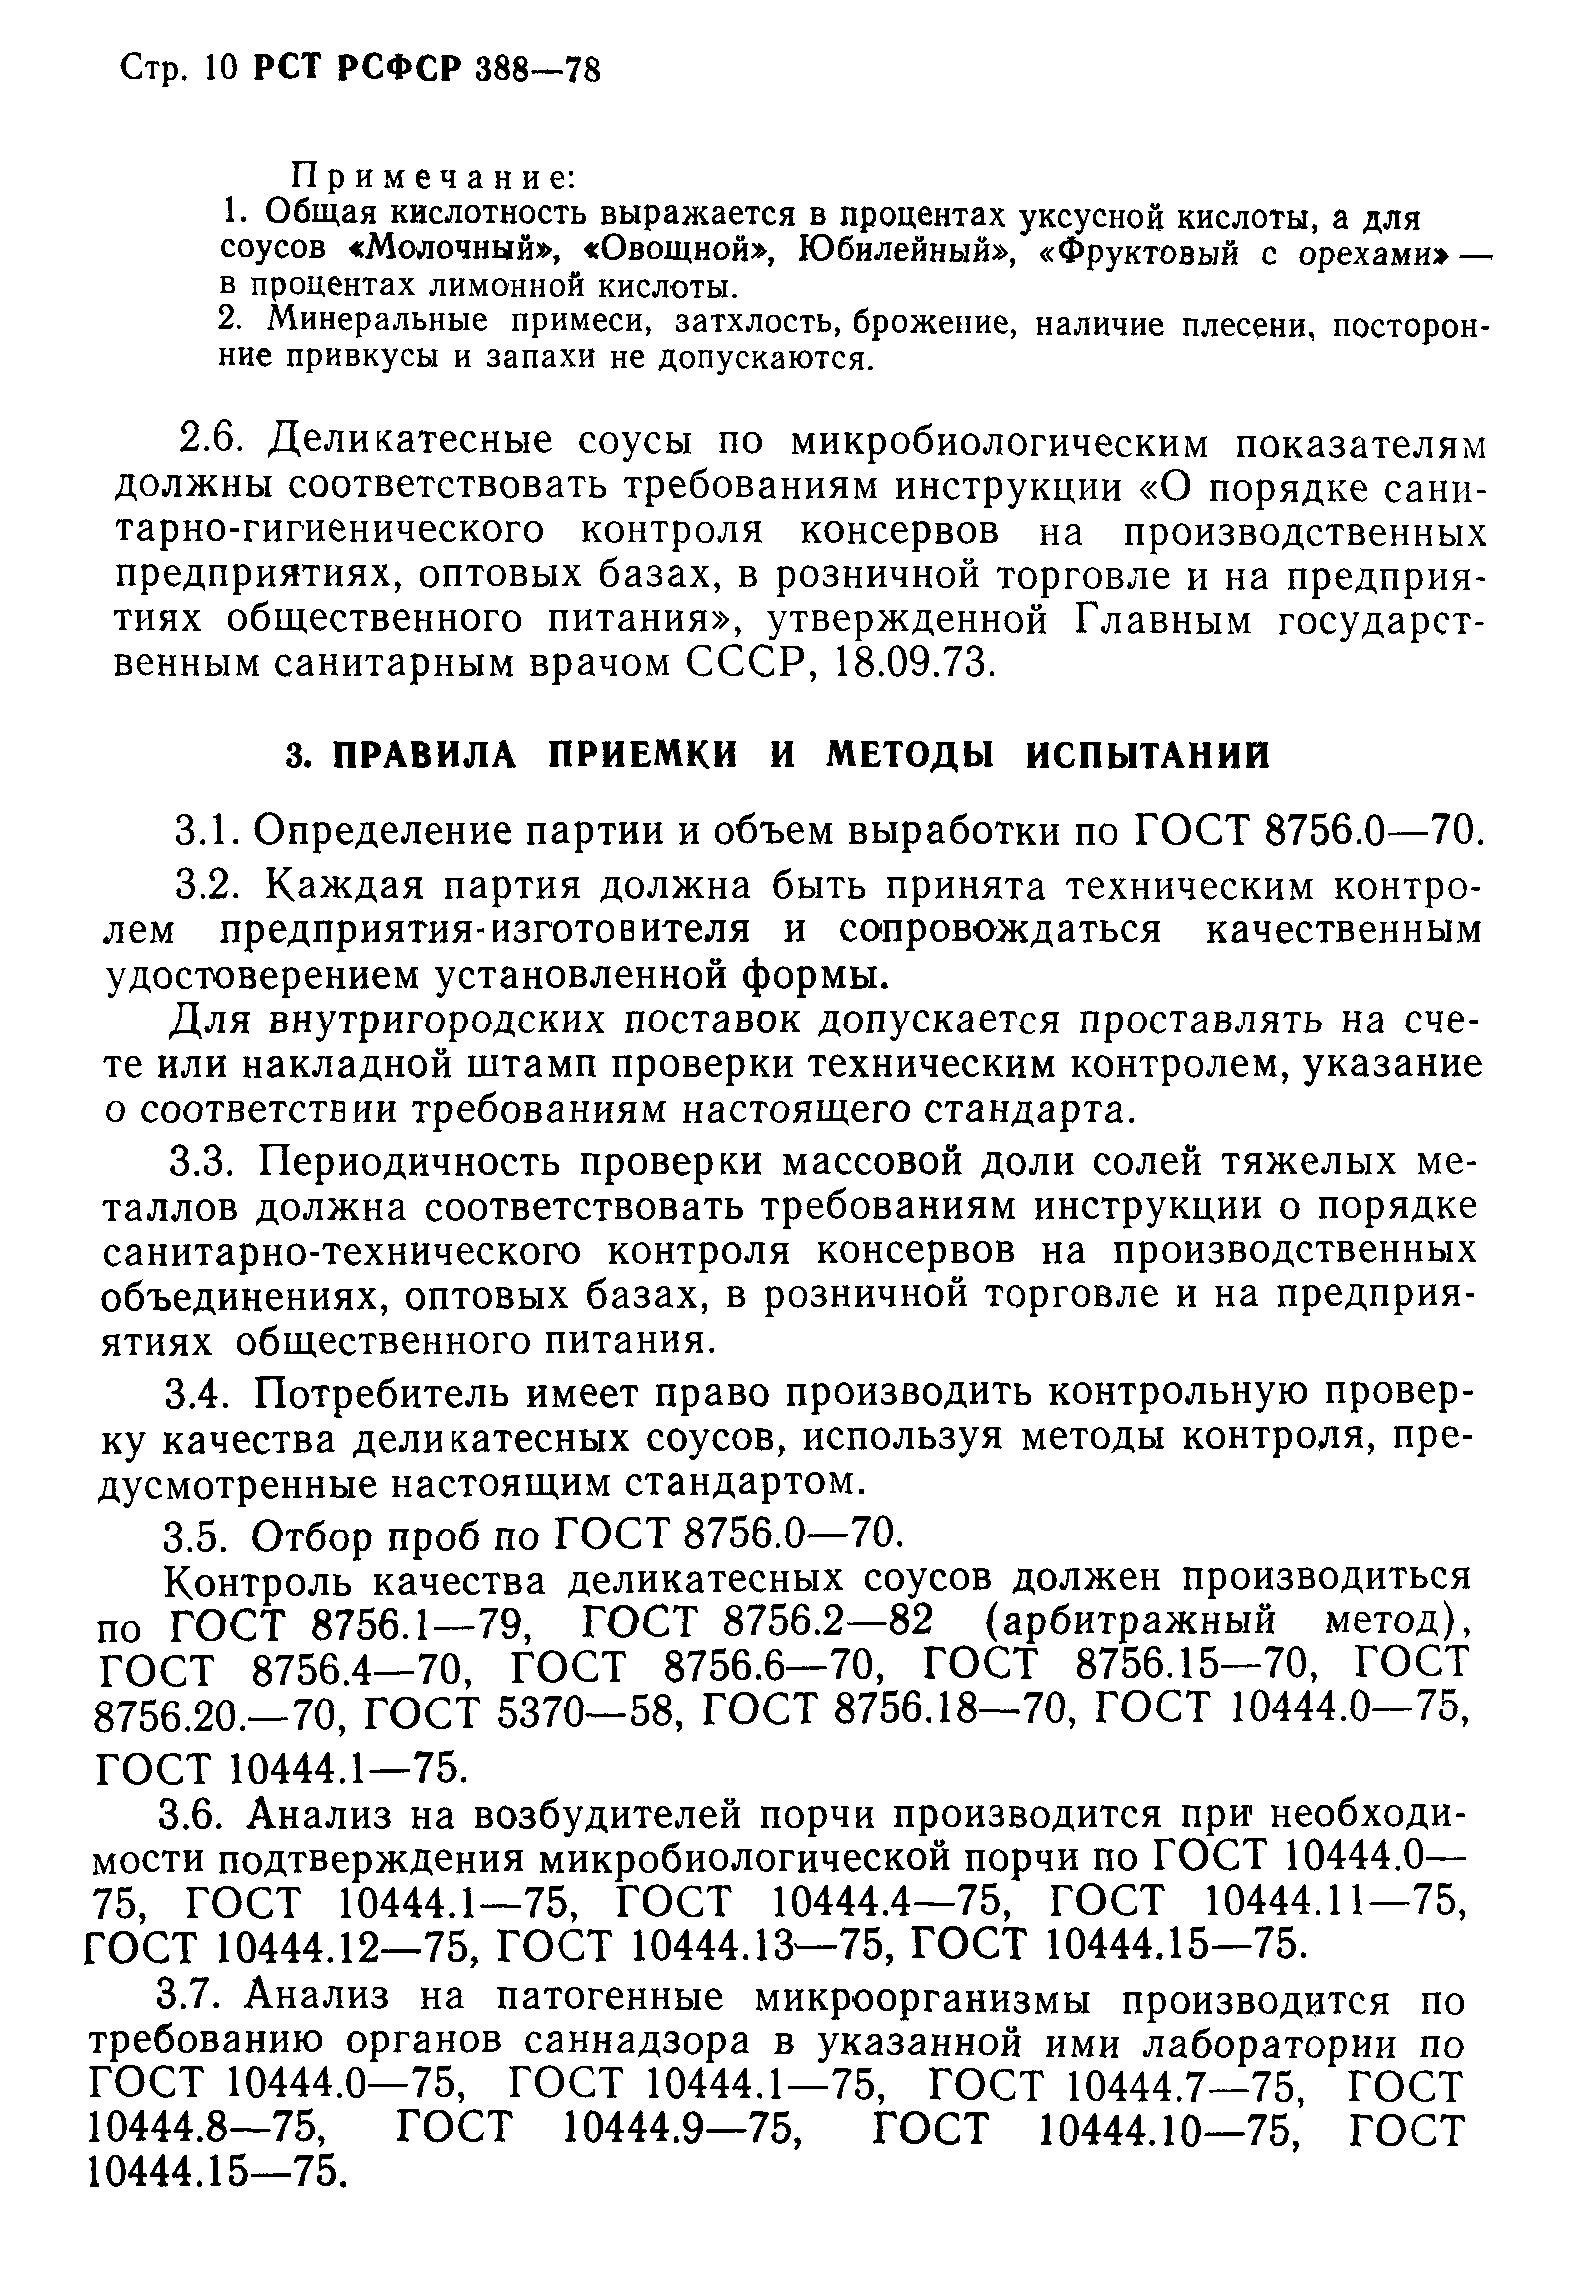 РСТ РСФСР 388-78